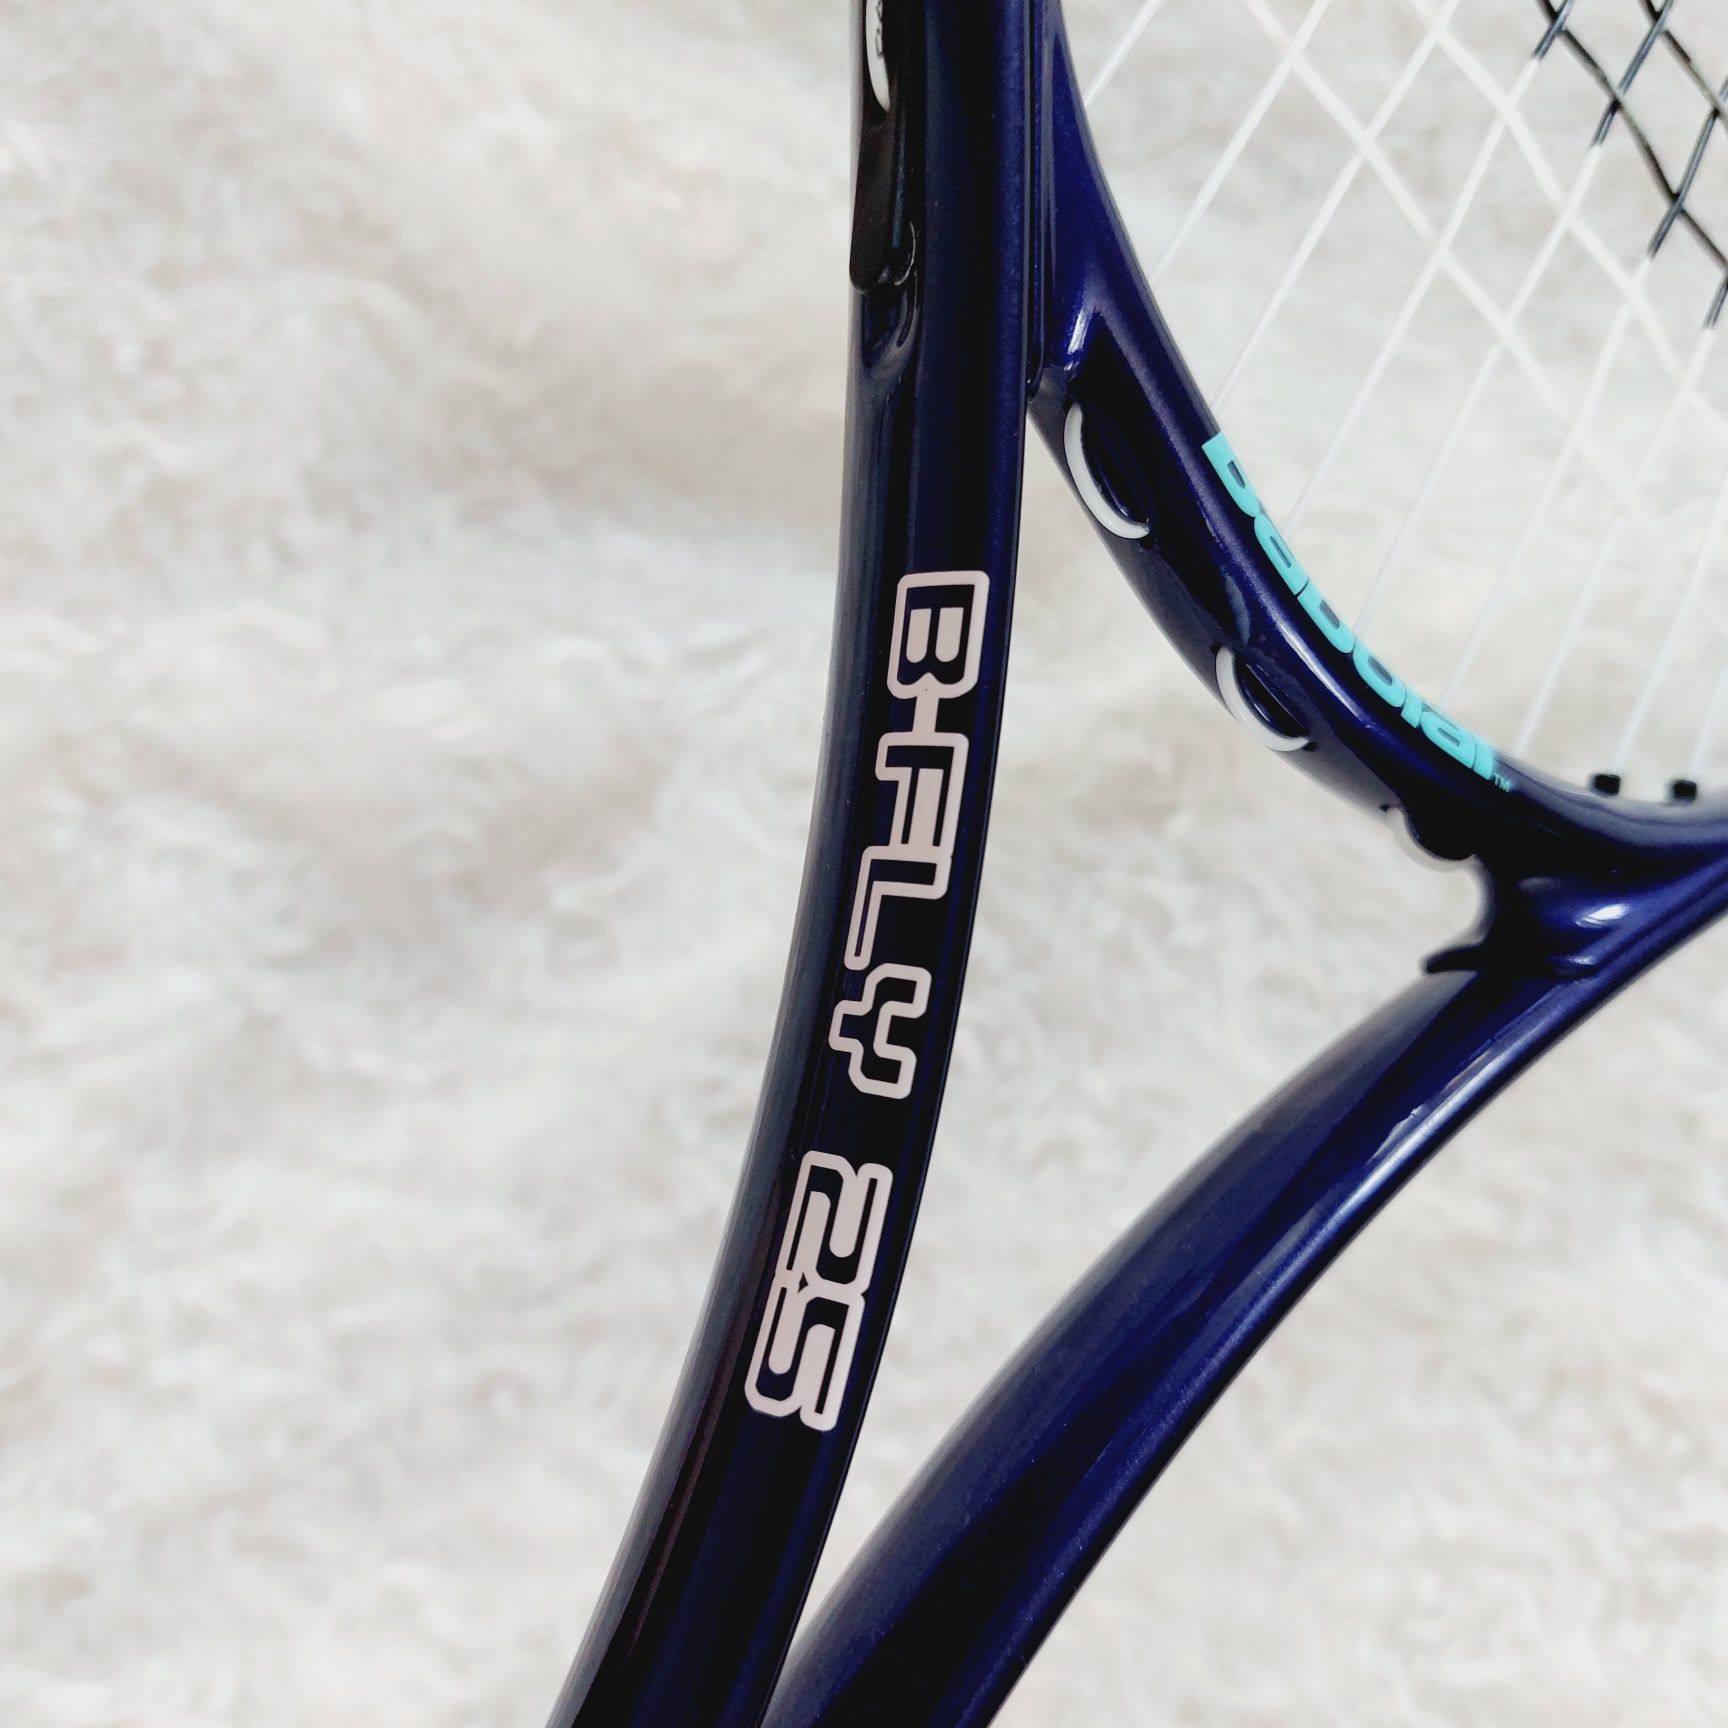 Rakieta tenisowa dla dzieci do 9 lat używana Babolat B- FLY 25 t